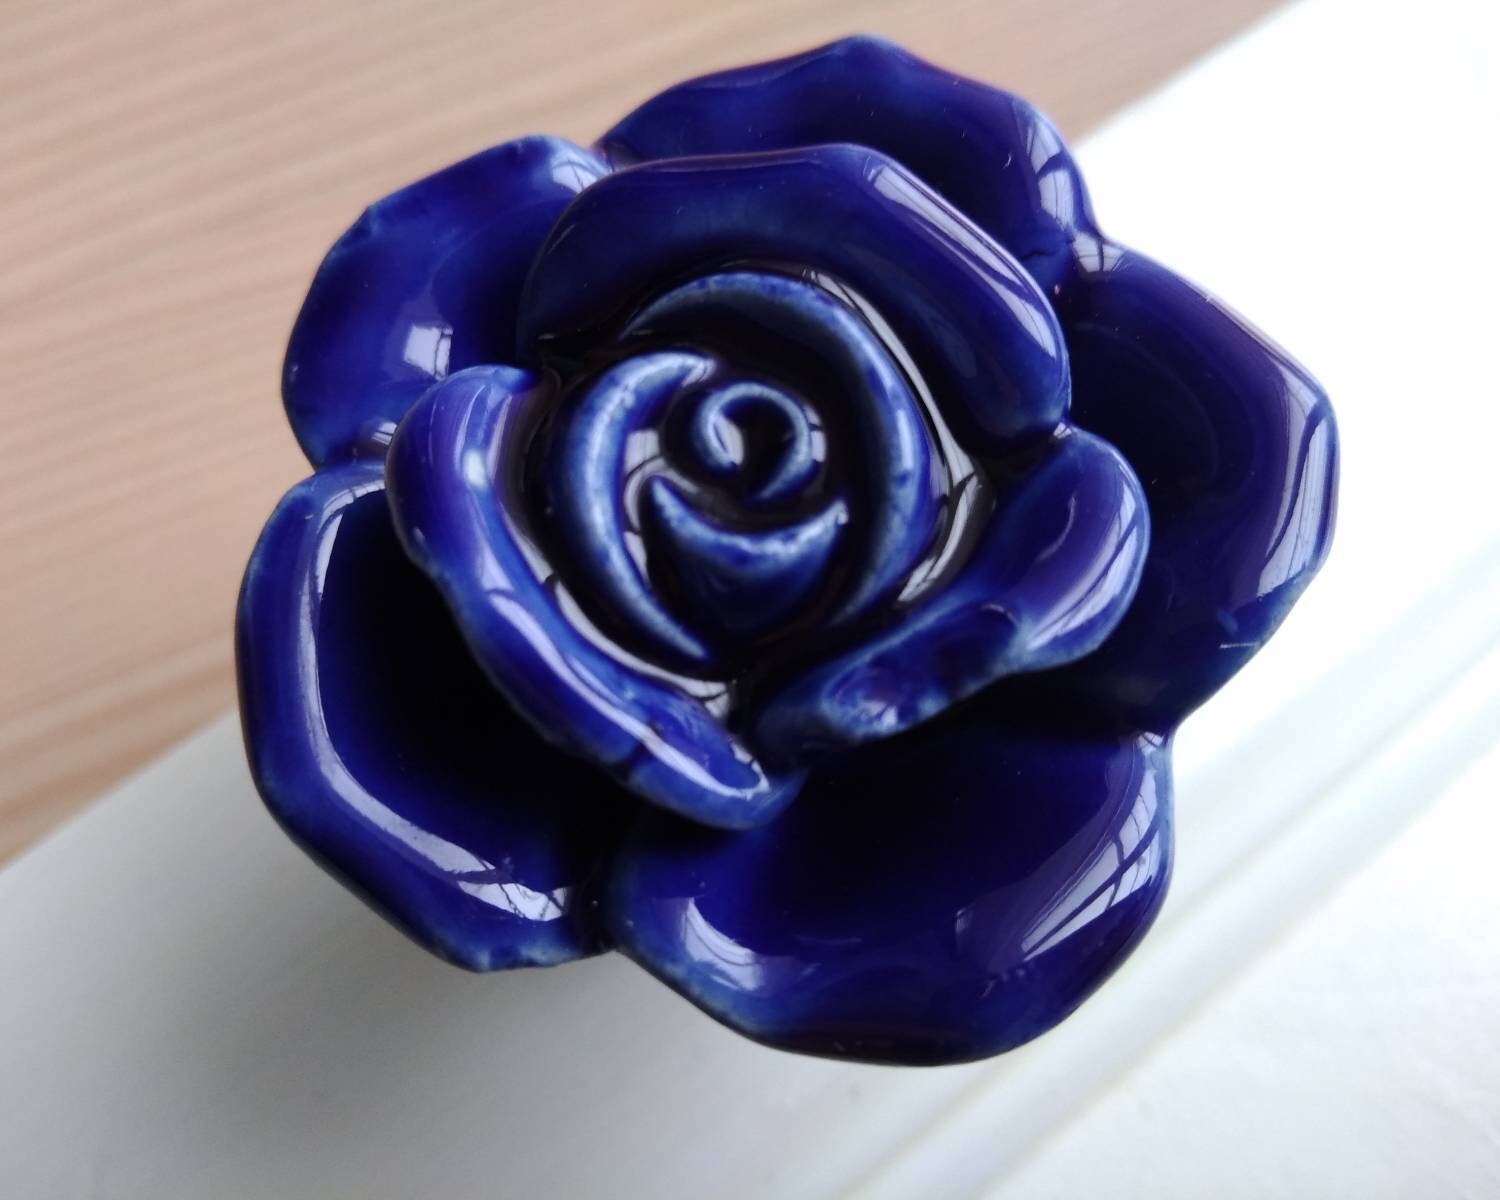 Vintage Rose Knob Blue Porcelain Rose Knobs Pulls Dresser | Etsy